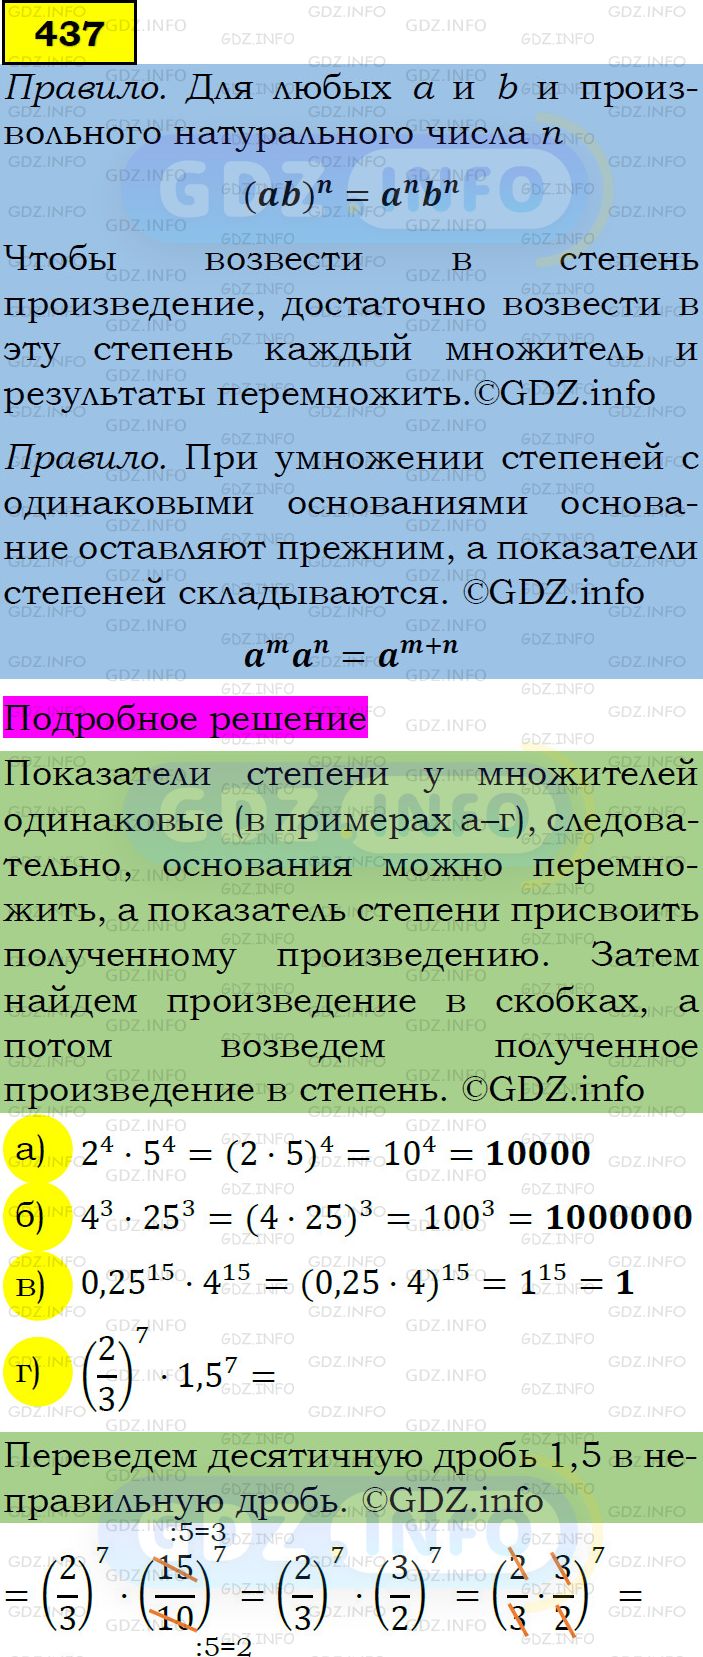 Фото подробного решения: Номер задания №437 из ГДЗ по Алгебре 7 класс: Макарычев Ю.Н.